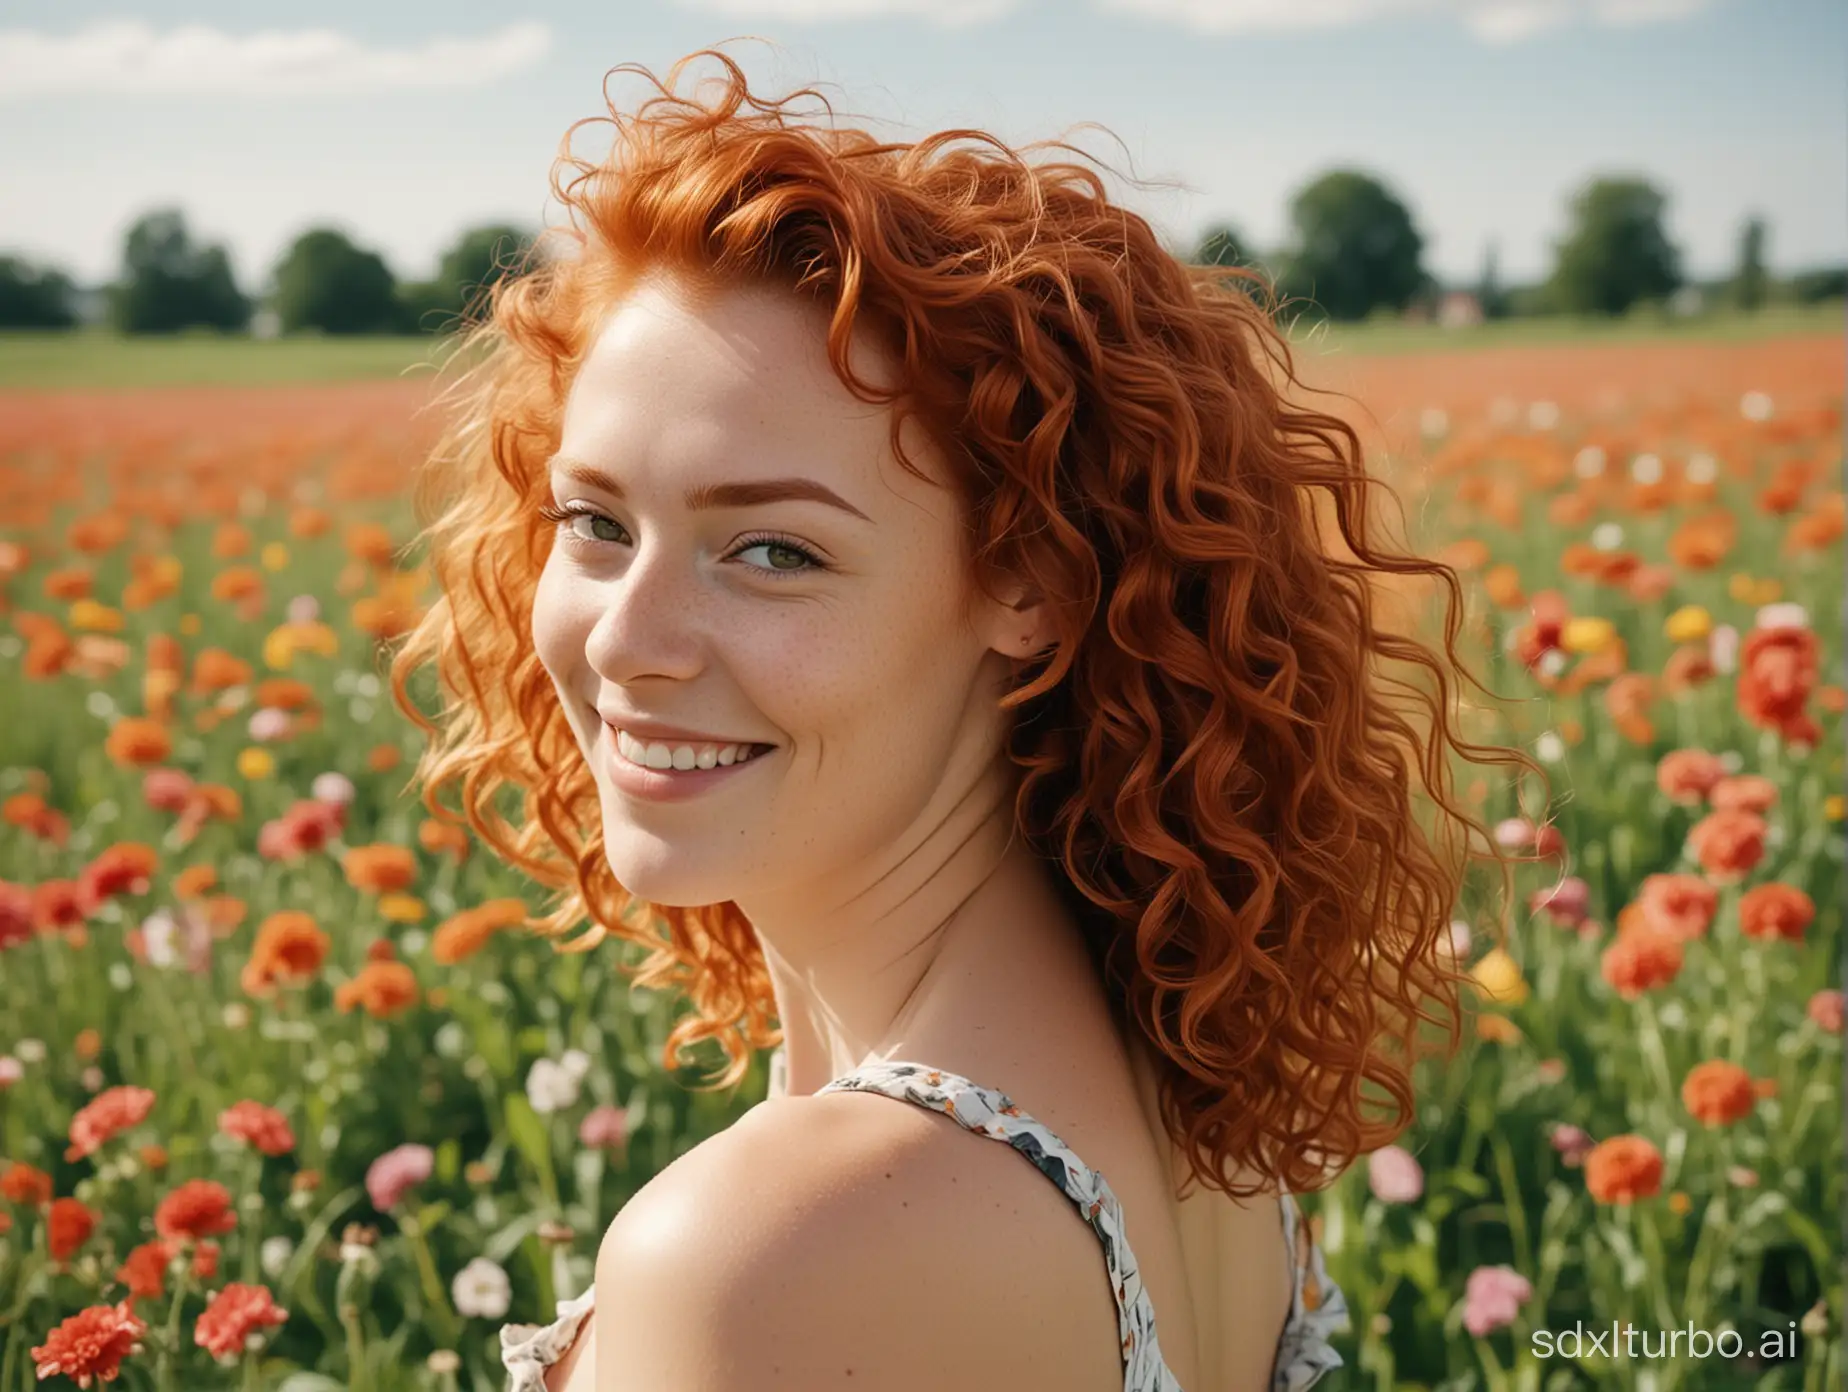 Joyful-Woman-with-Red-Hair-in-Vibrant-Flower-Field-Portrait